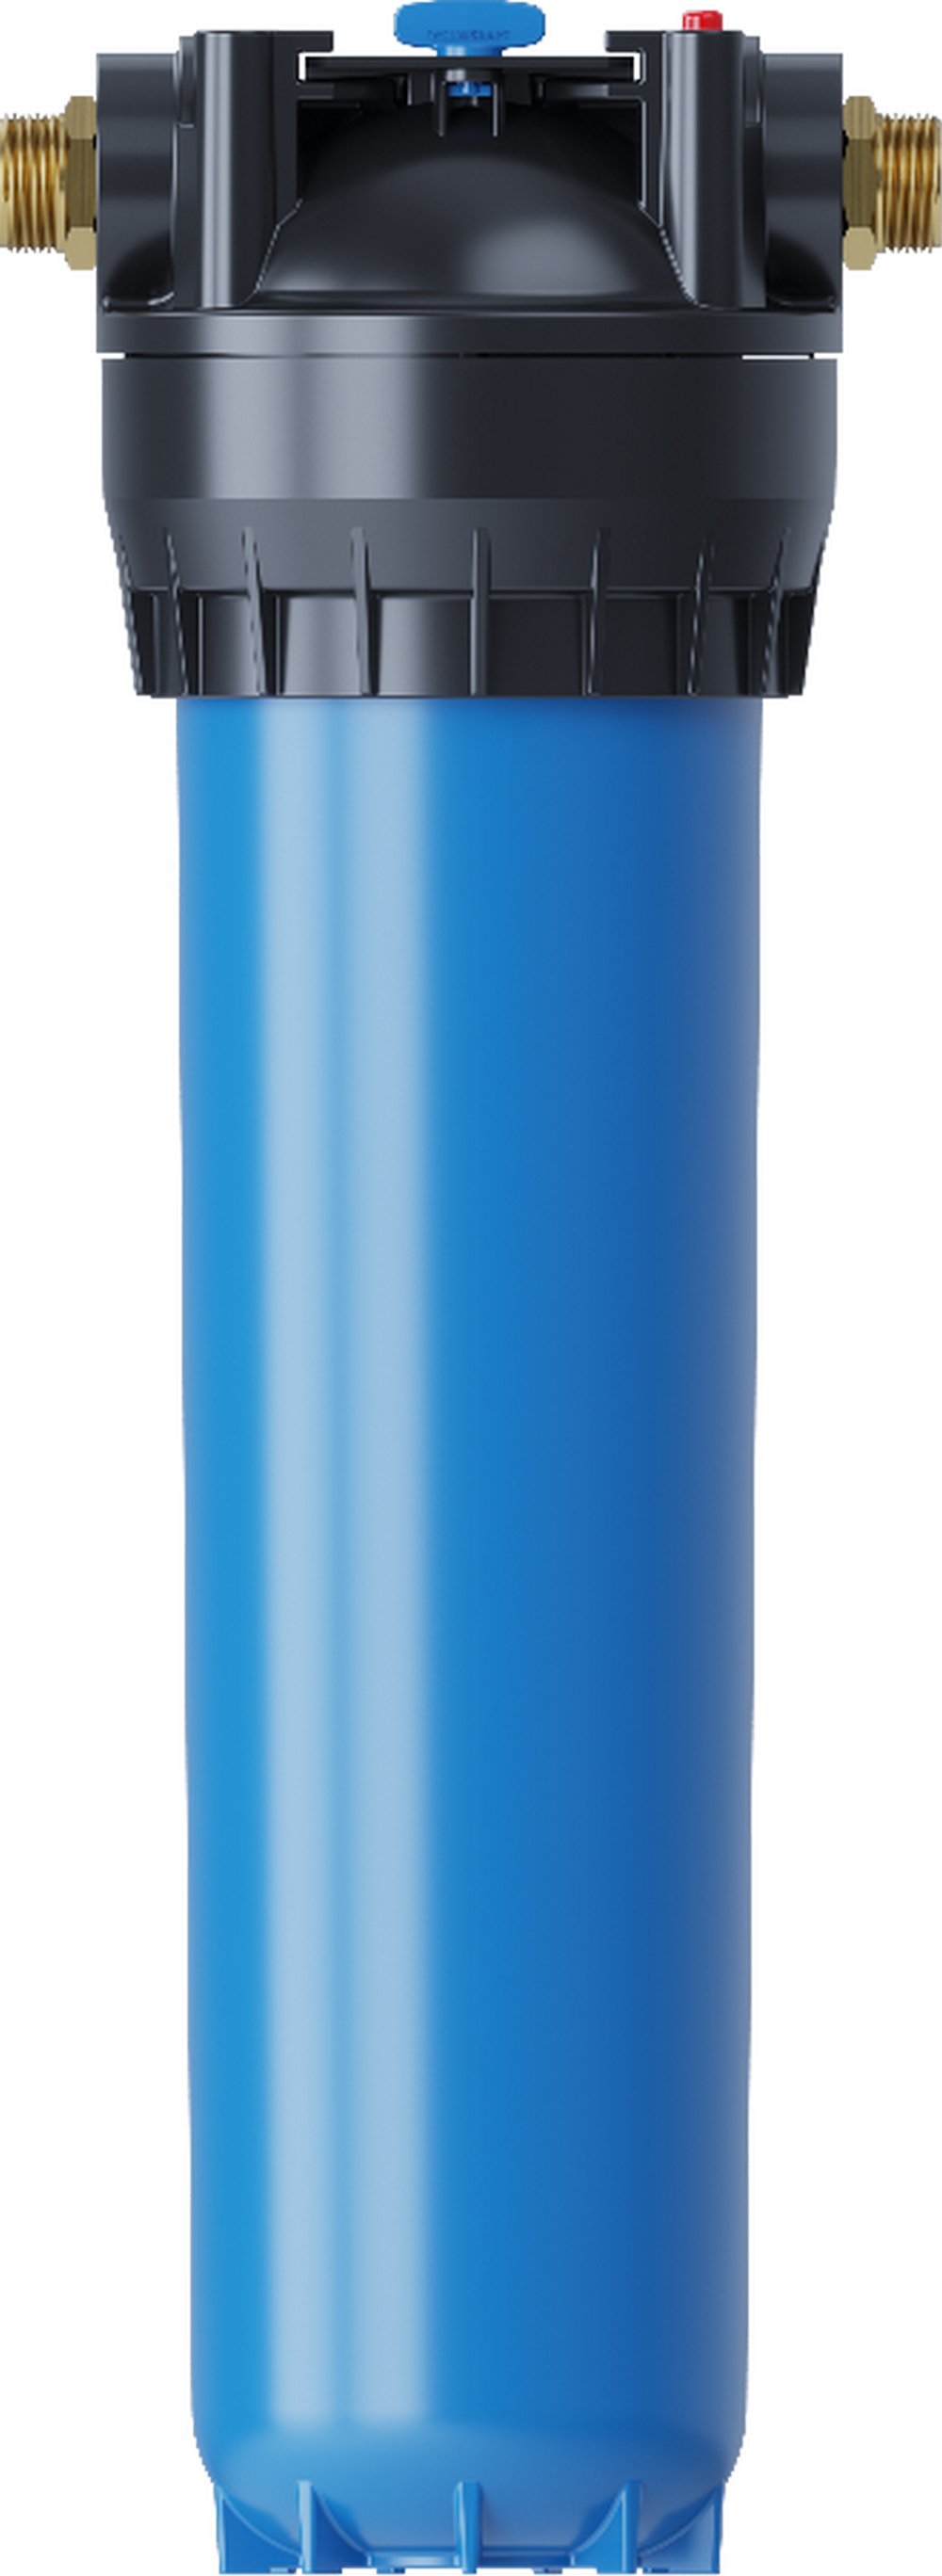 Характеристики фильтр-колба aquaphor для воды Aquaphor Гросс 20""